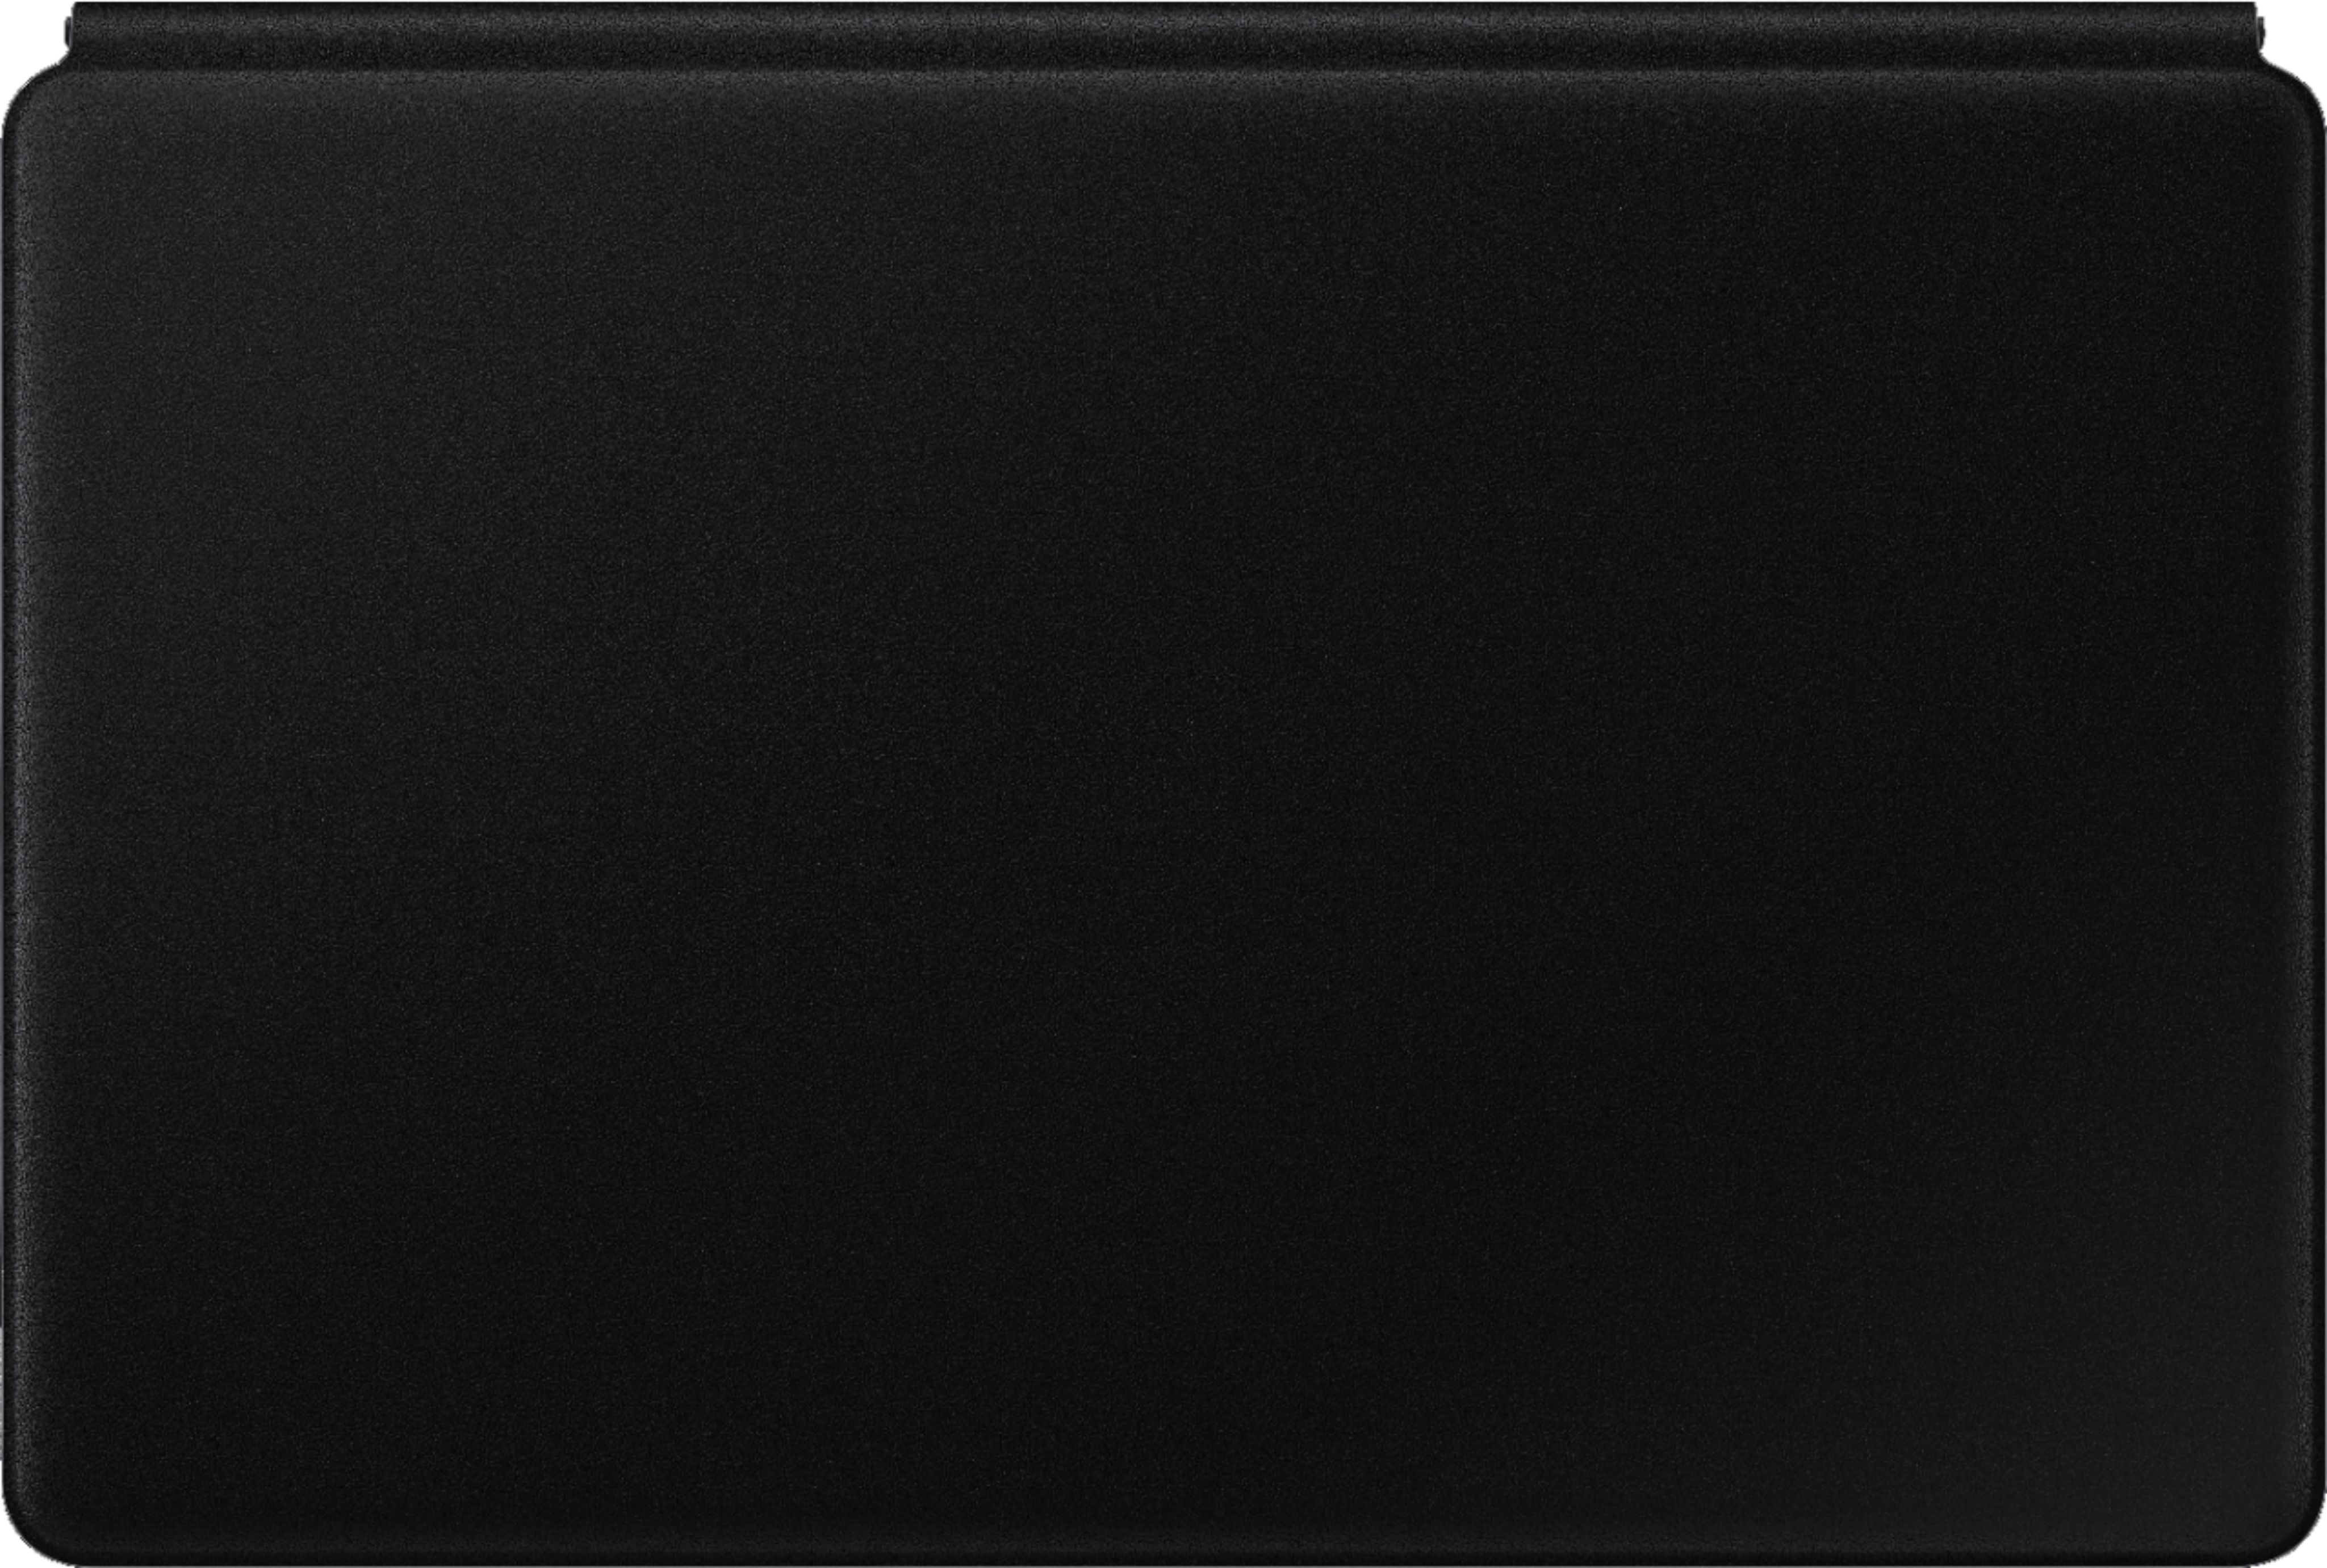 Samsung - Galaxy Tab S7 Book Cover Keyboard - EF-DT870UBEGUJ - Black